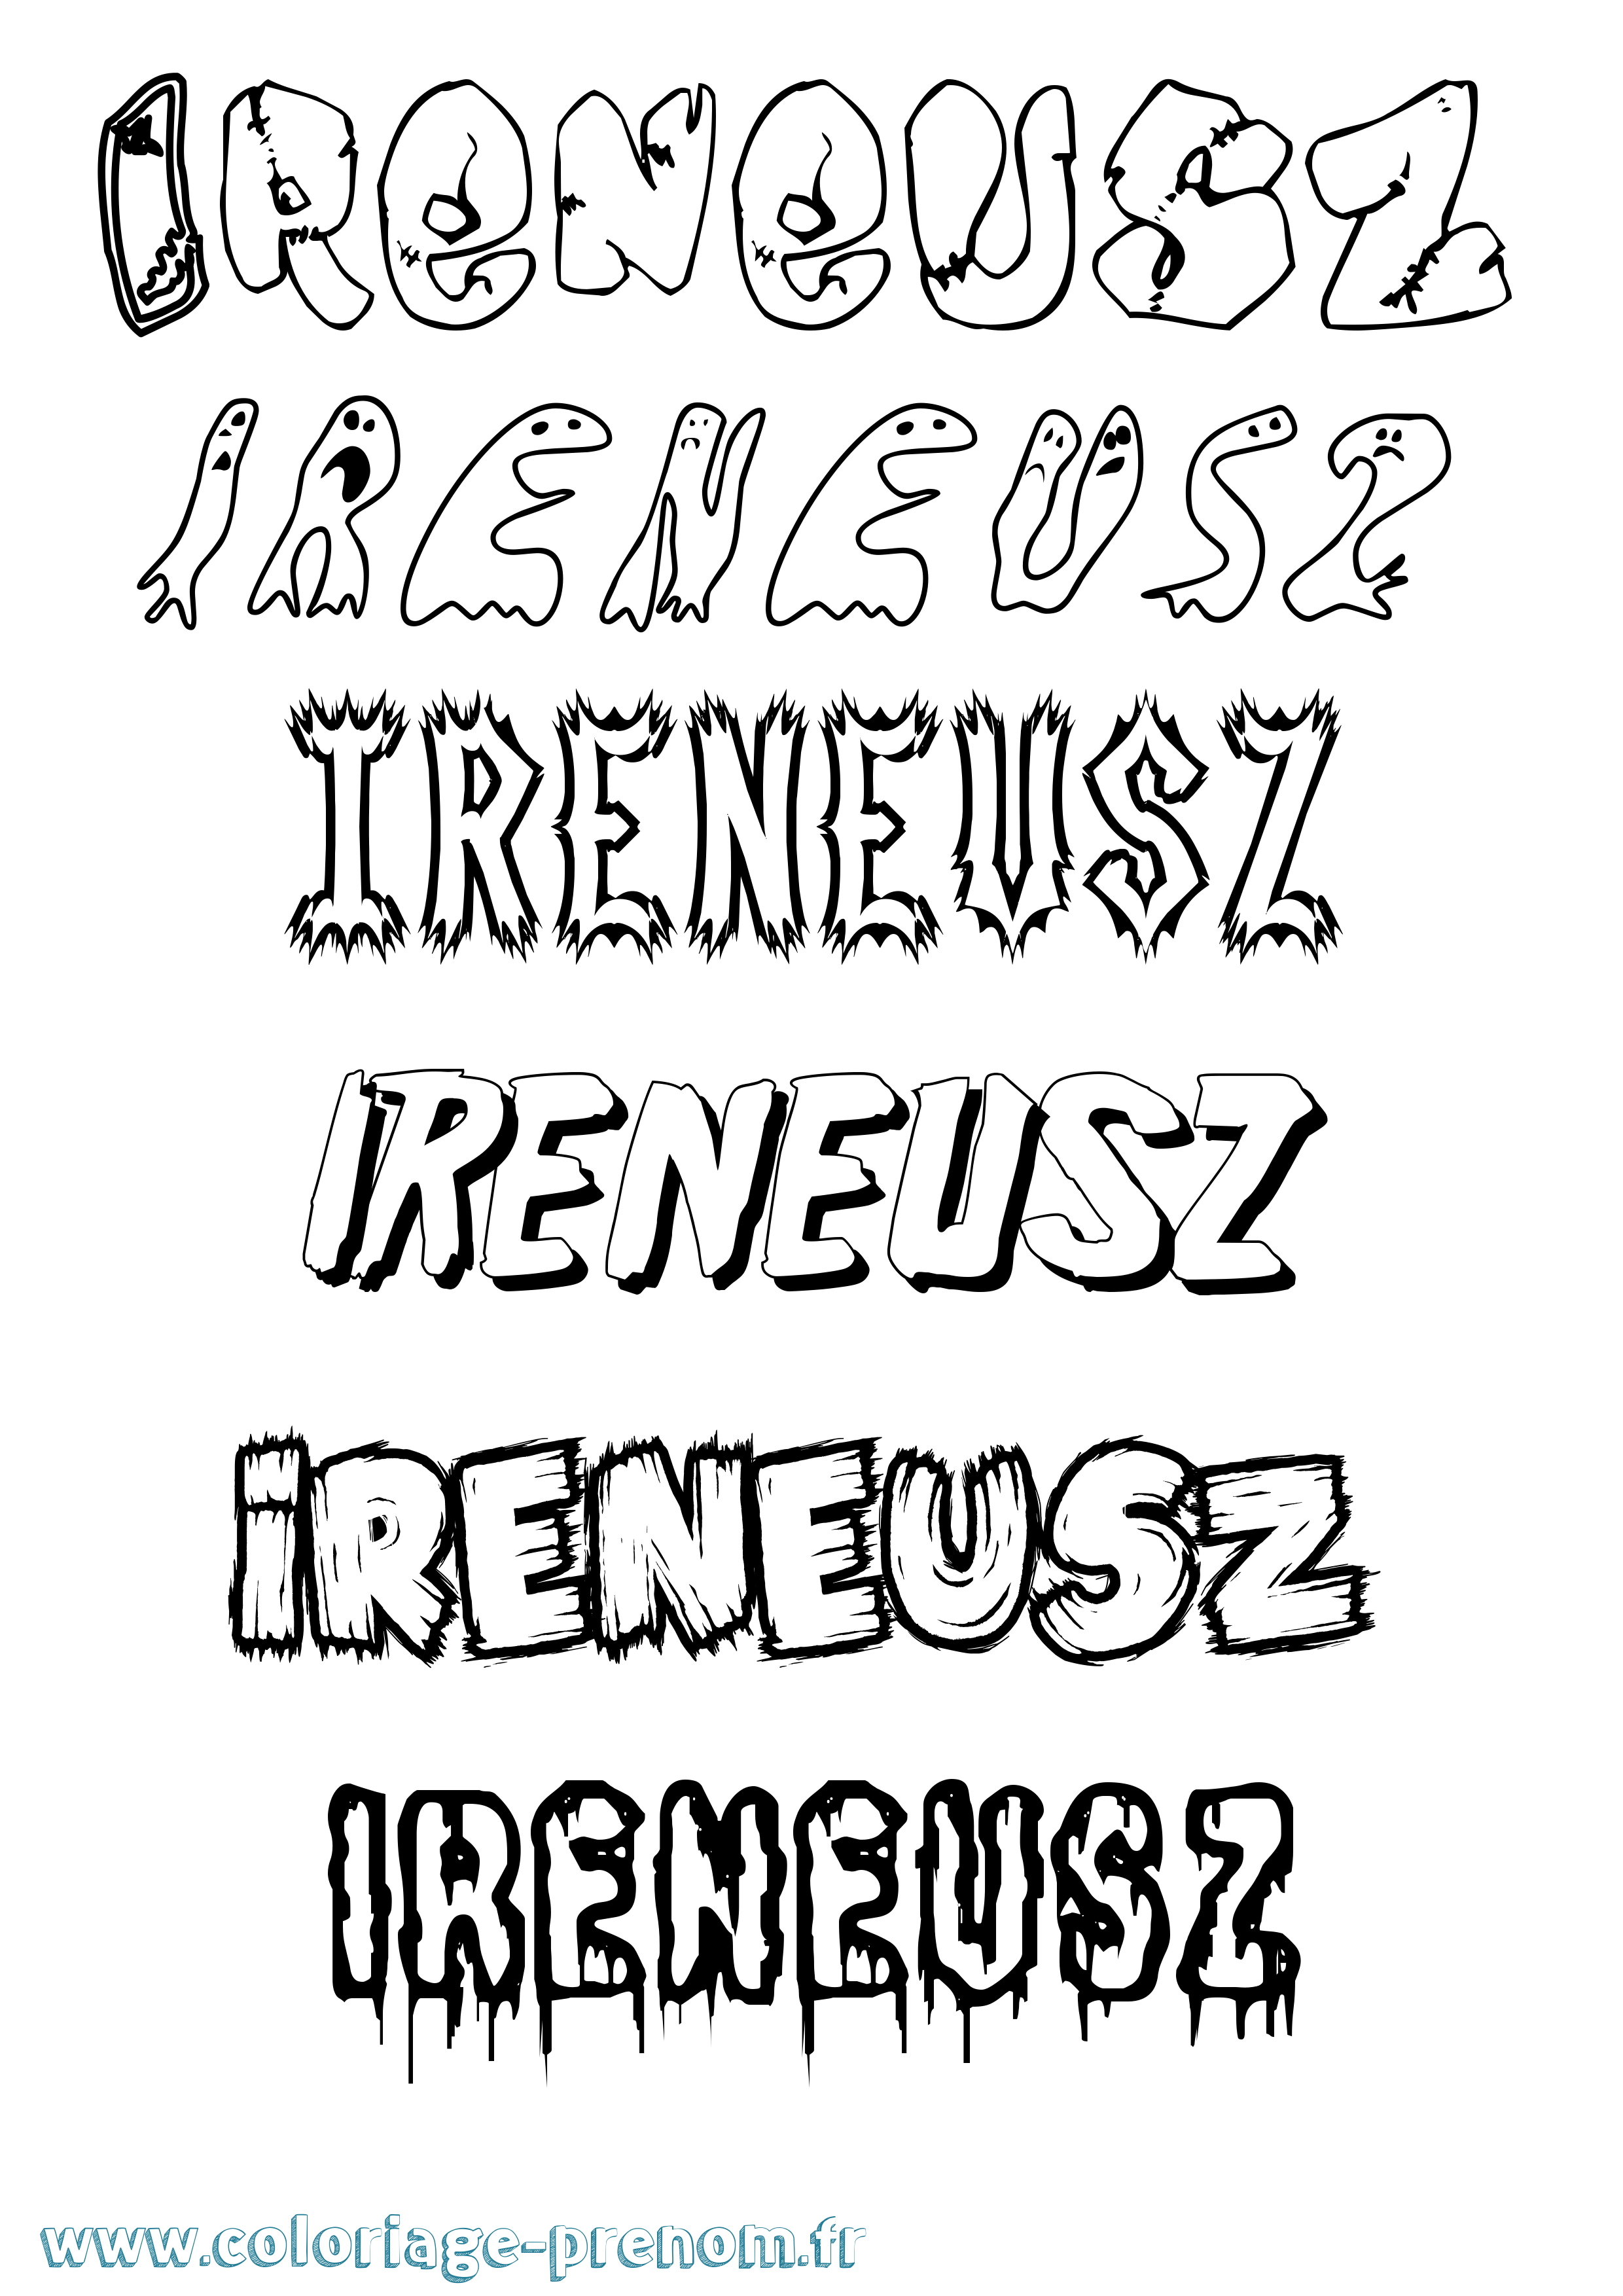 Coloriage prénom Ireneusz Frisson